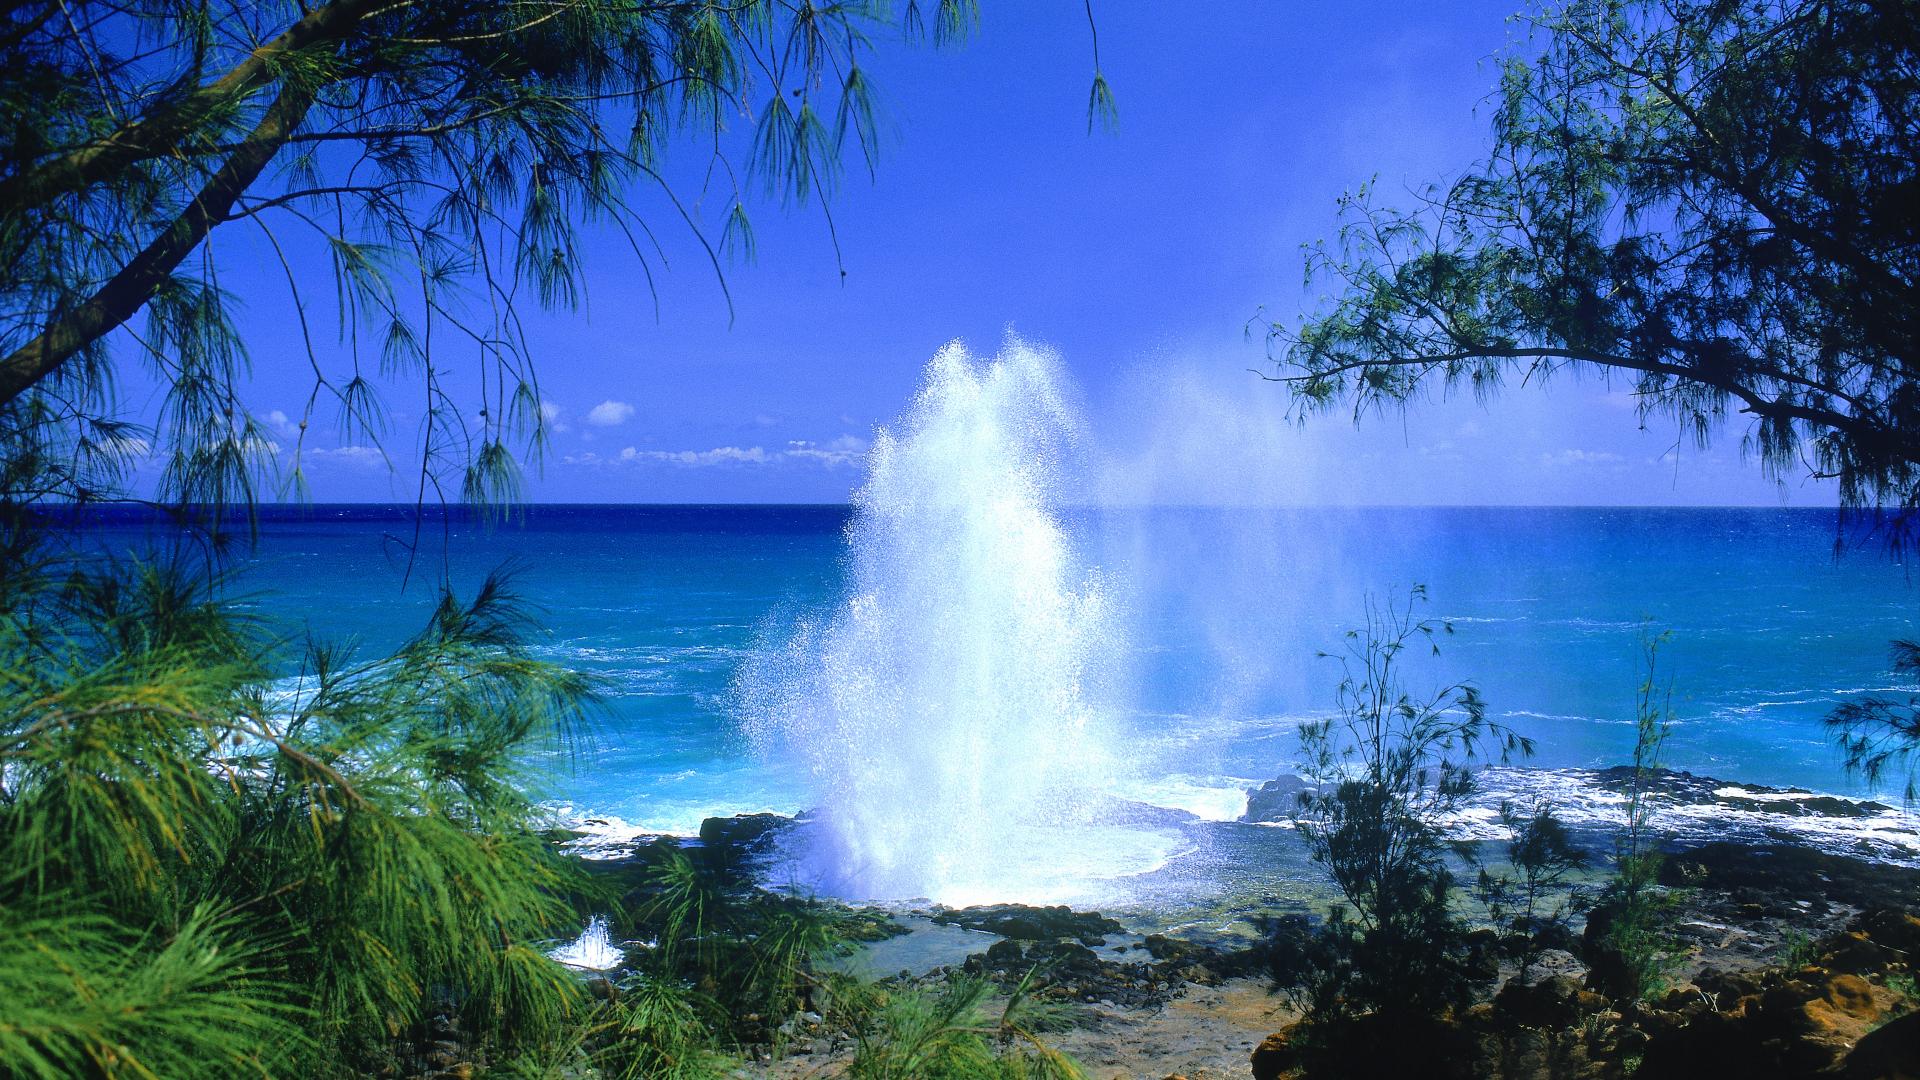 دانلود عکس ساحل دریا با کیفیت Full HD جزایر هاوایی